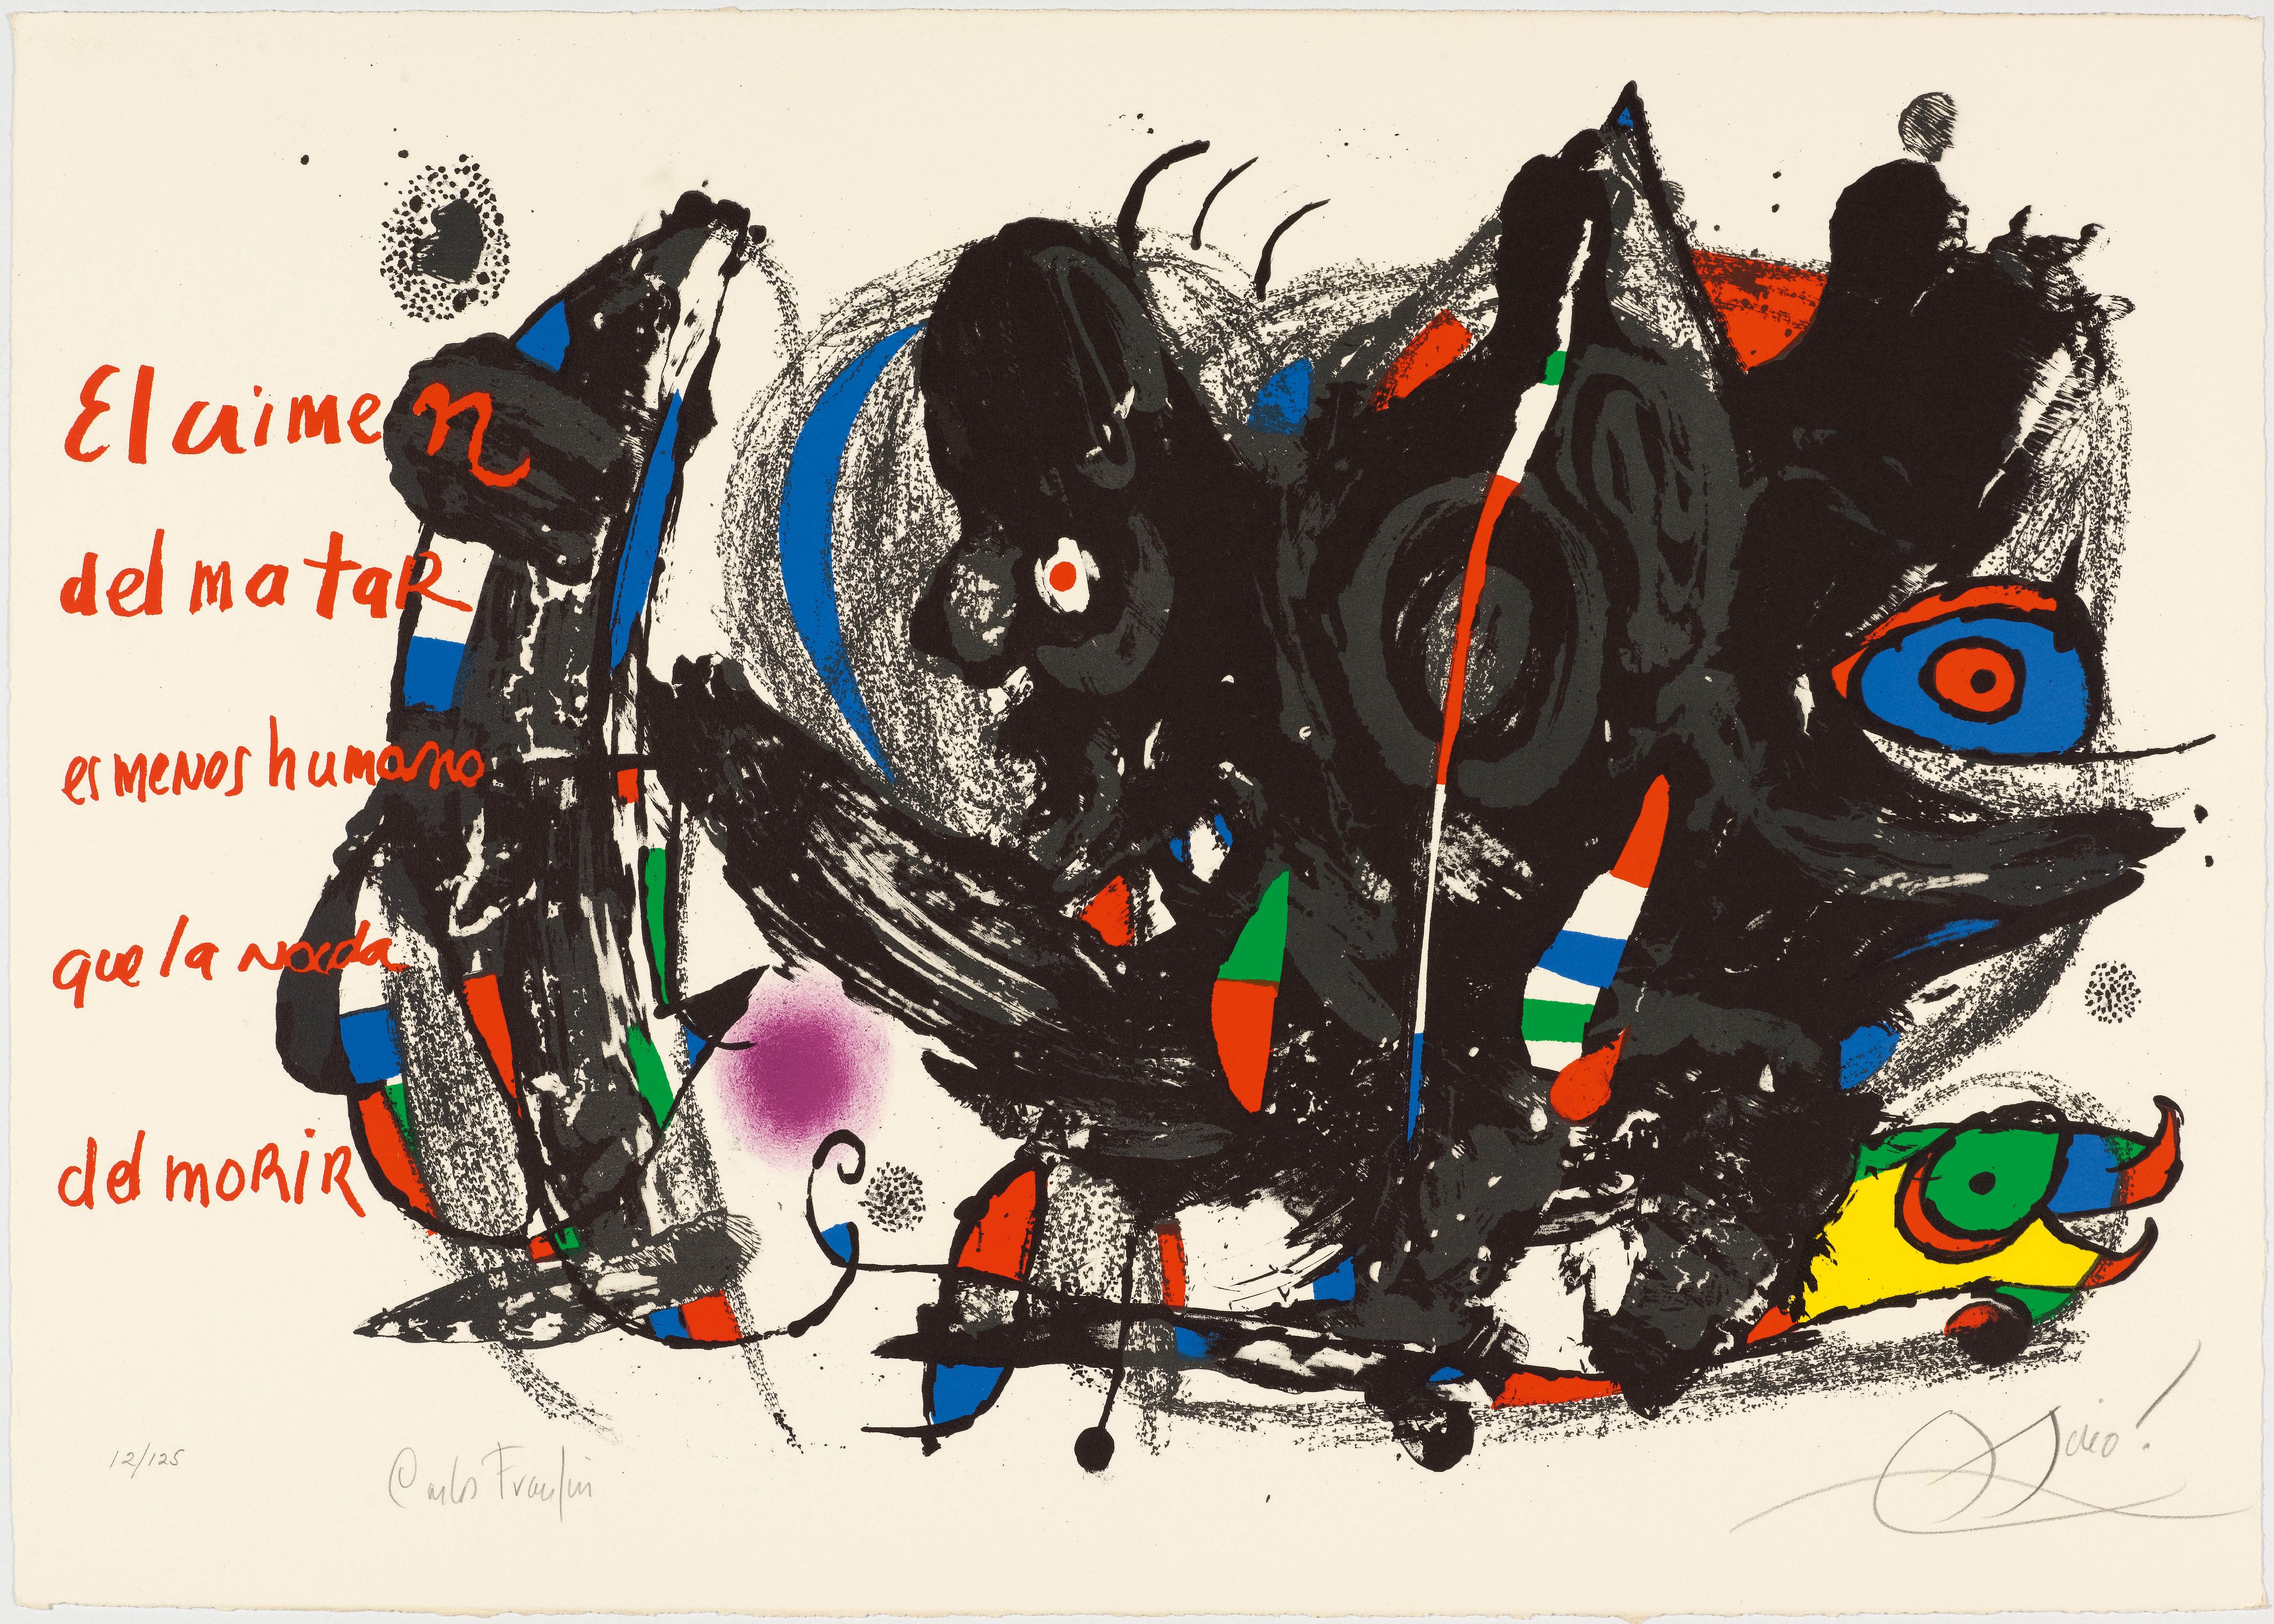 Poemas para mirar. 1976
Lithographie en couleur

Édition 12/125

Signé au crayon en bas à droite : Miró. Image 48 × 75 cm sur papier vélin d'Arches 55 × 78 cm

Publié par l'éditeur D. Blanco, Genève

Imprimé par Arte Adrien Maeght, Paris
D'après le